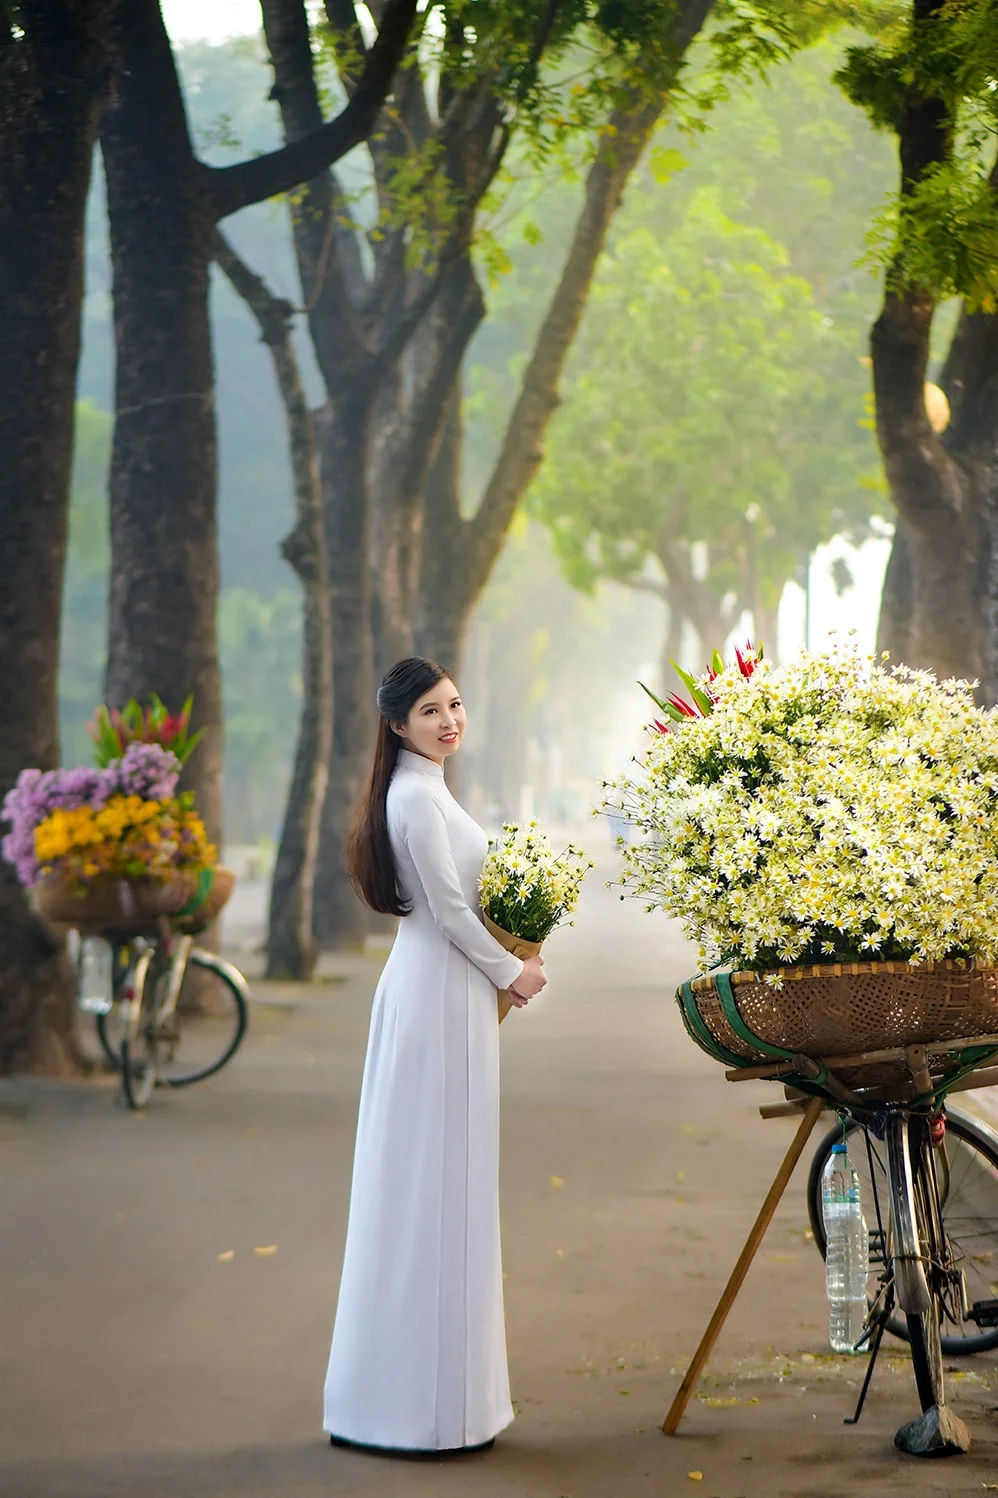 Giá gói chụp ảnh áo dài ngoại cảnh ở Hà Nội đẹp